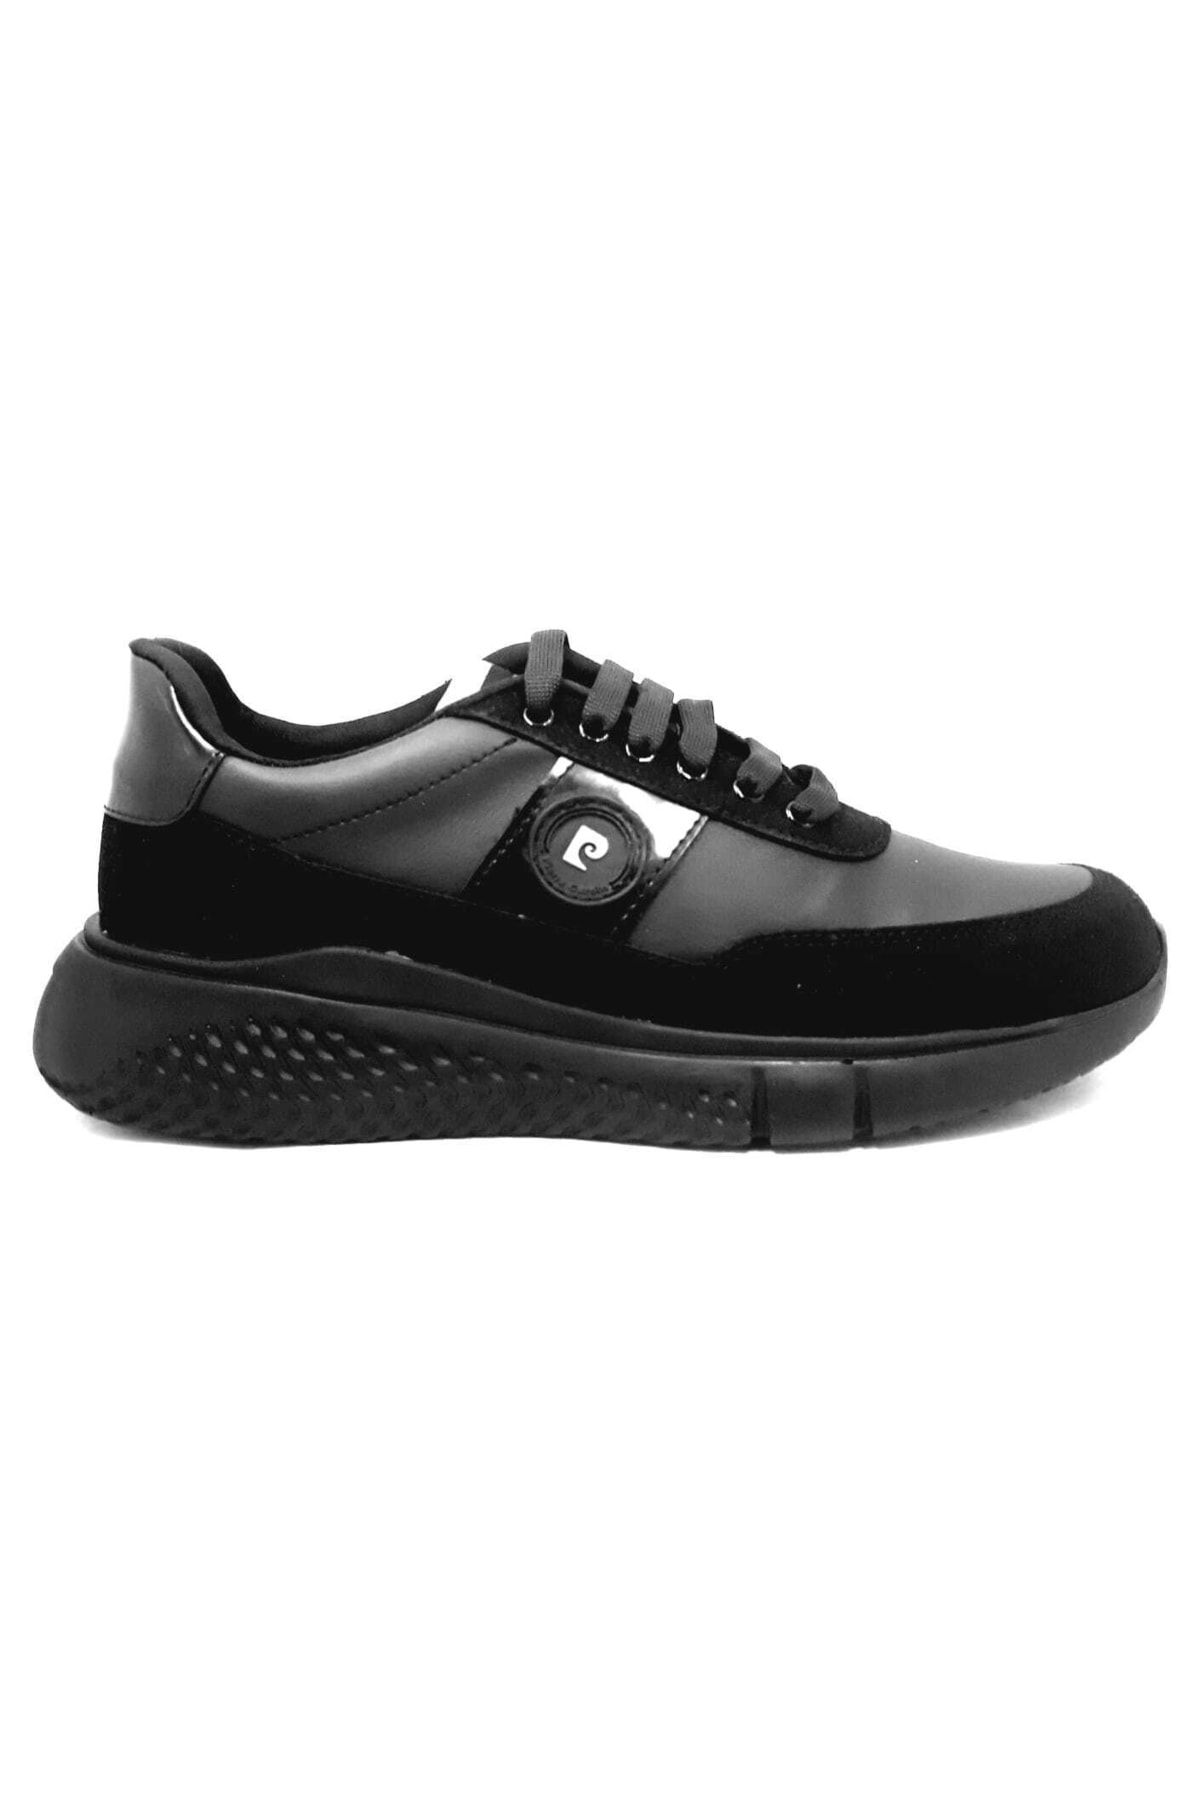 Pierre Cardin 2814 Siyah Sneakers Erkek Spor Ayakkabı